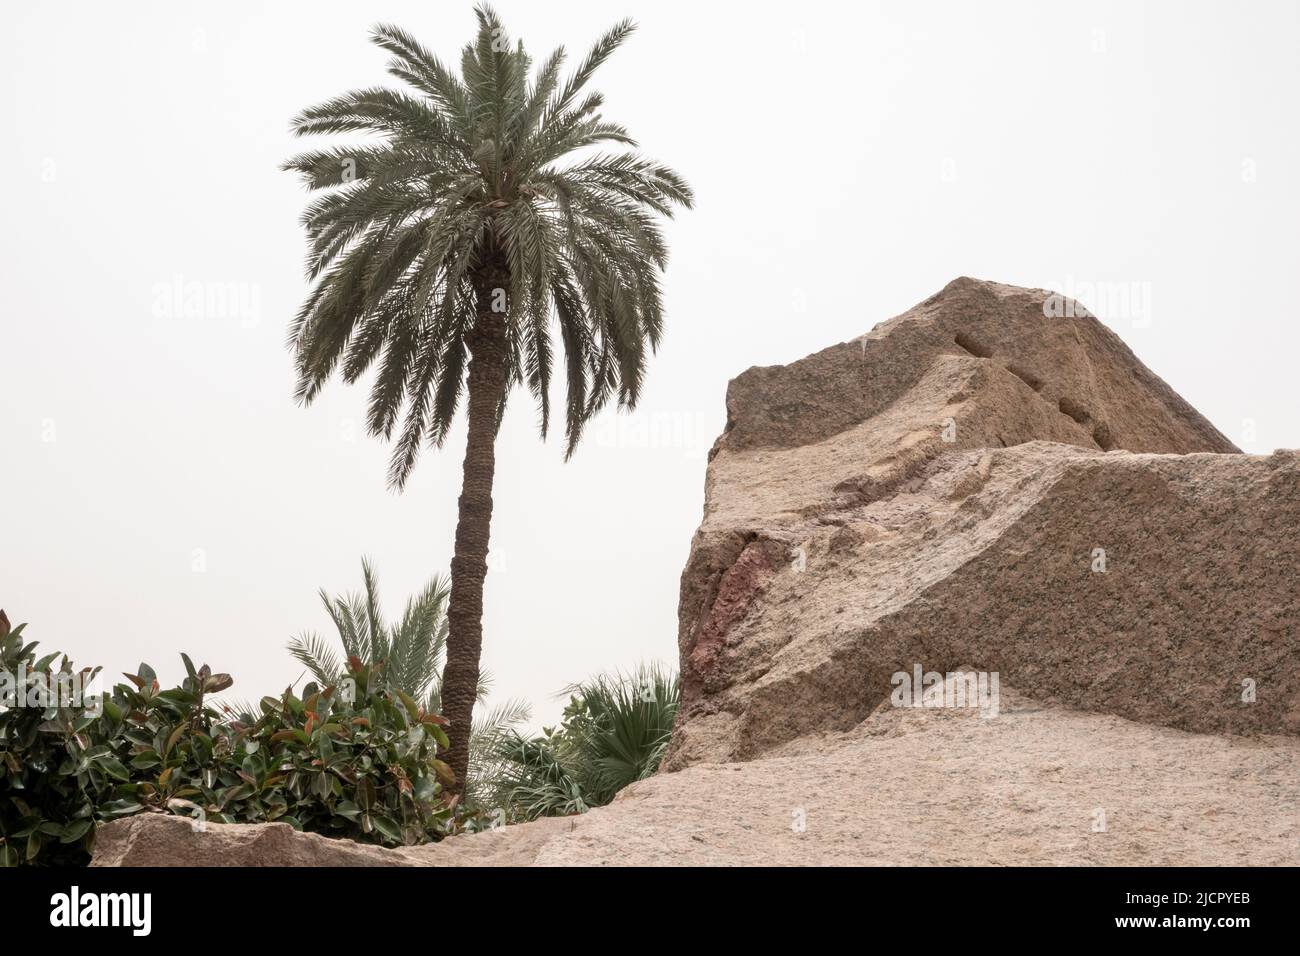 Antiche cave di granito ad Assuan, Alto Egitto Foto Stock